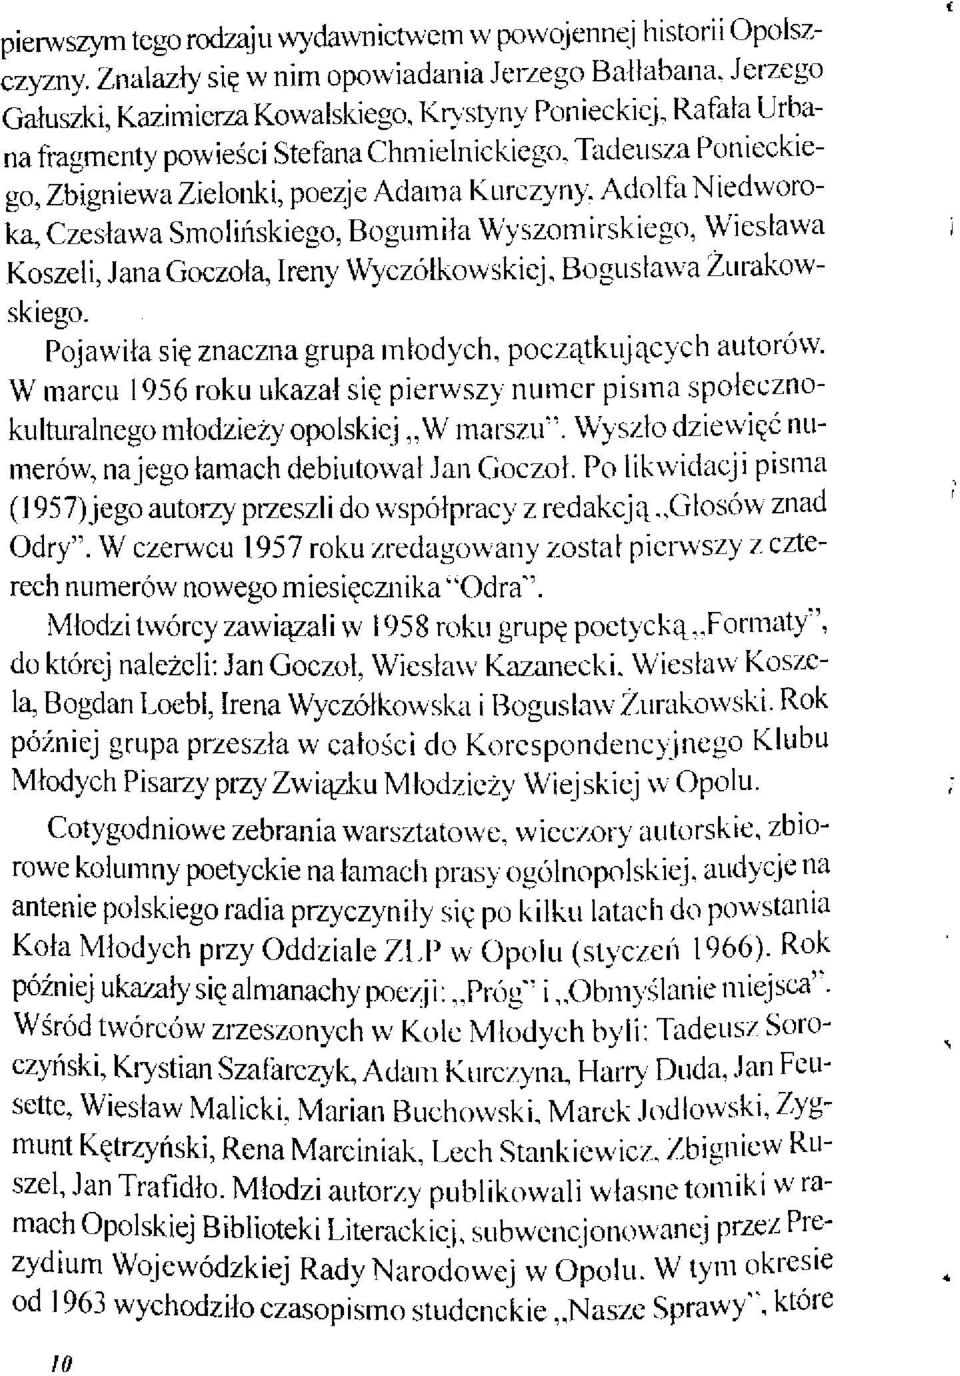 Adolfa Niedworoka, Czesława Smolińskiego, Bogumiła Wyszomirskiego, Wiesława Koszeli, Jana Goczoła, Ireny Wyczółkowskiej, Bogusława Żurakowskiego.